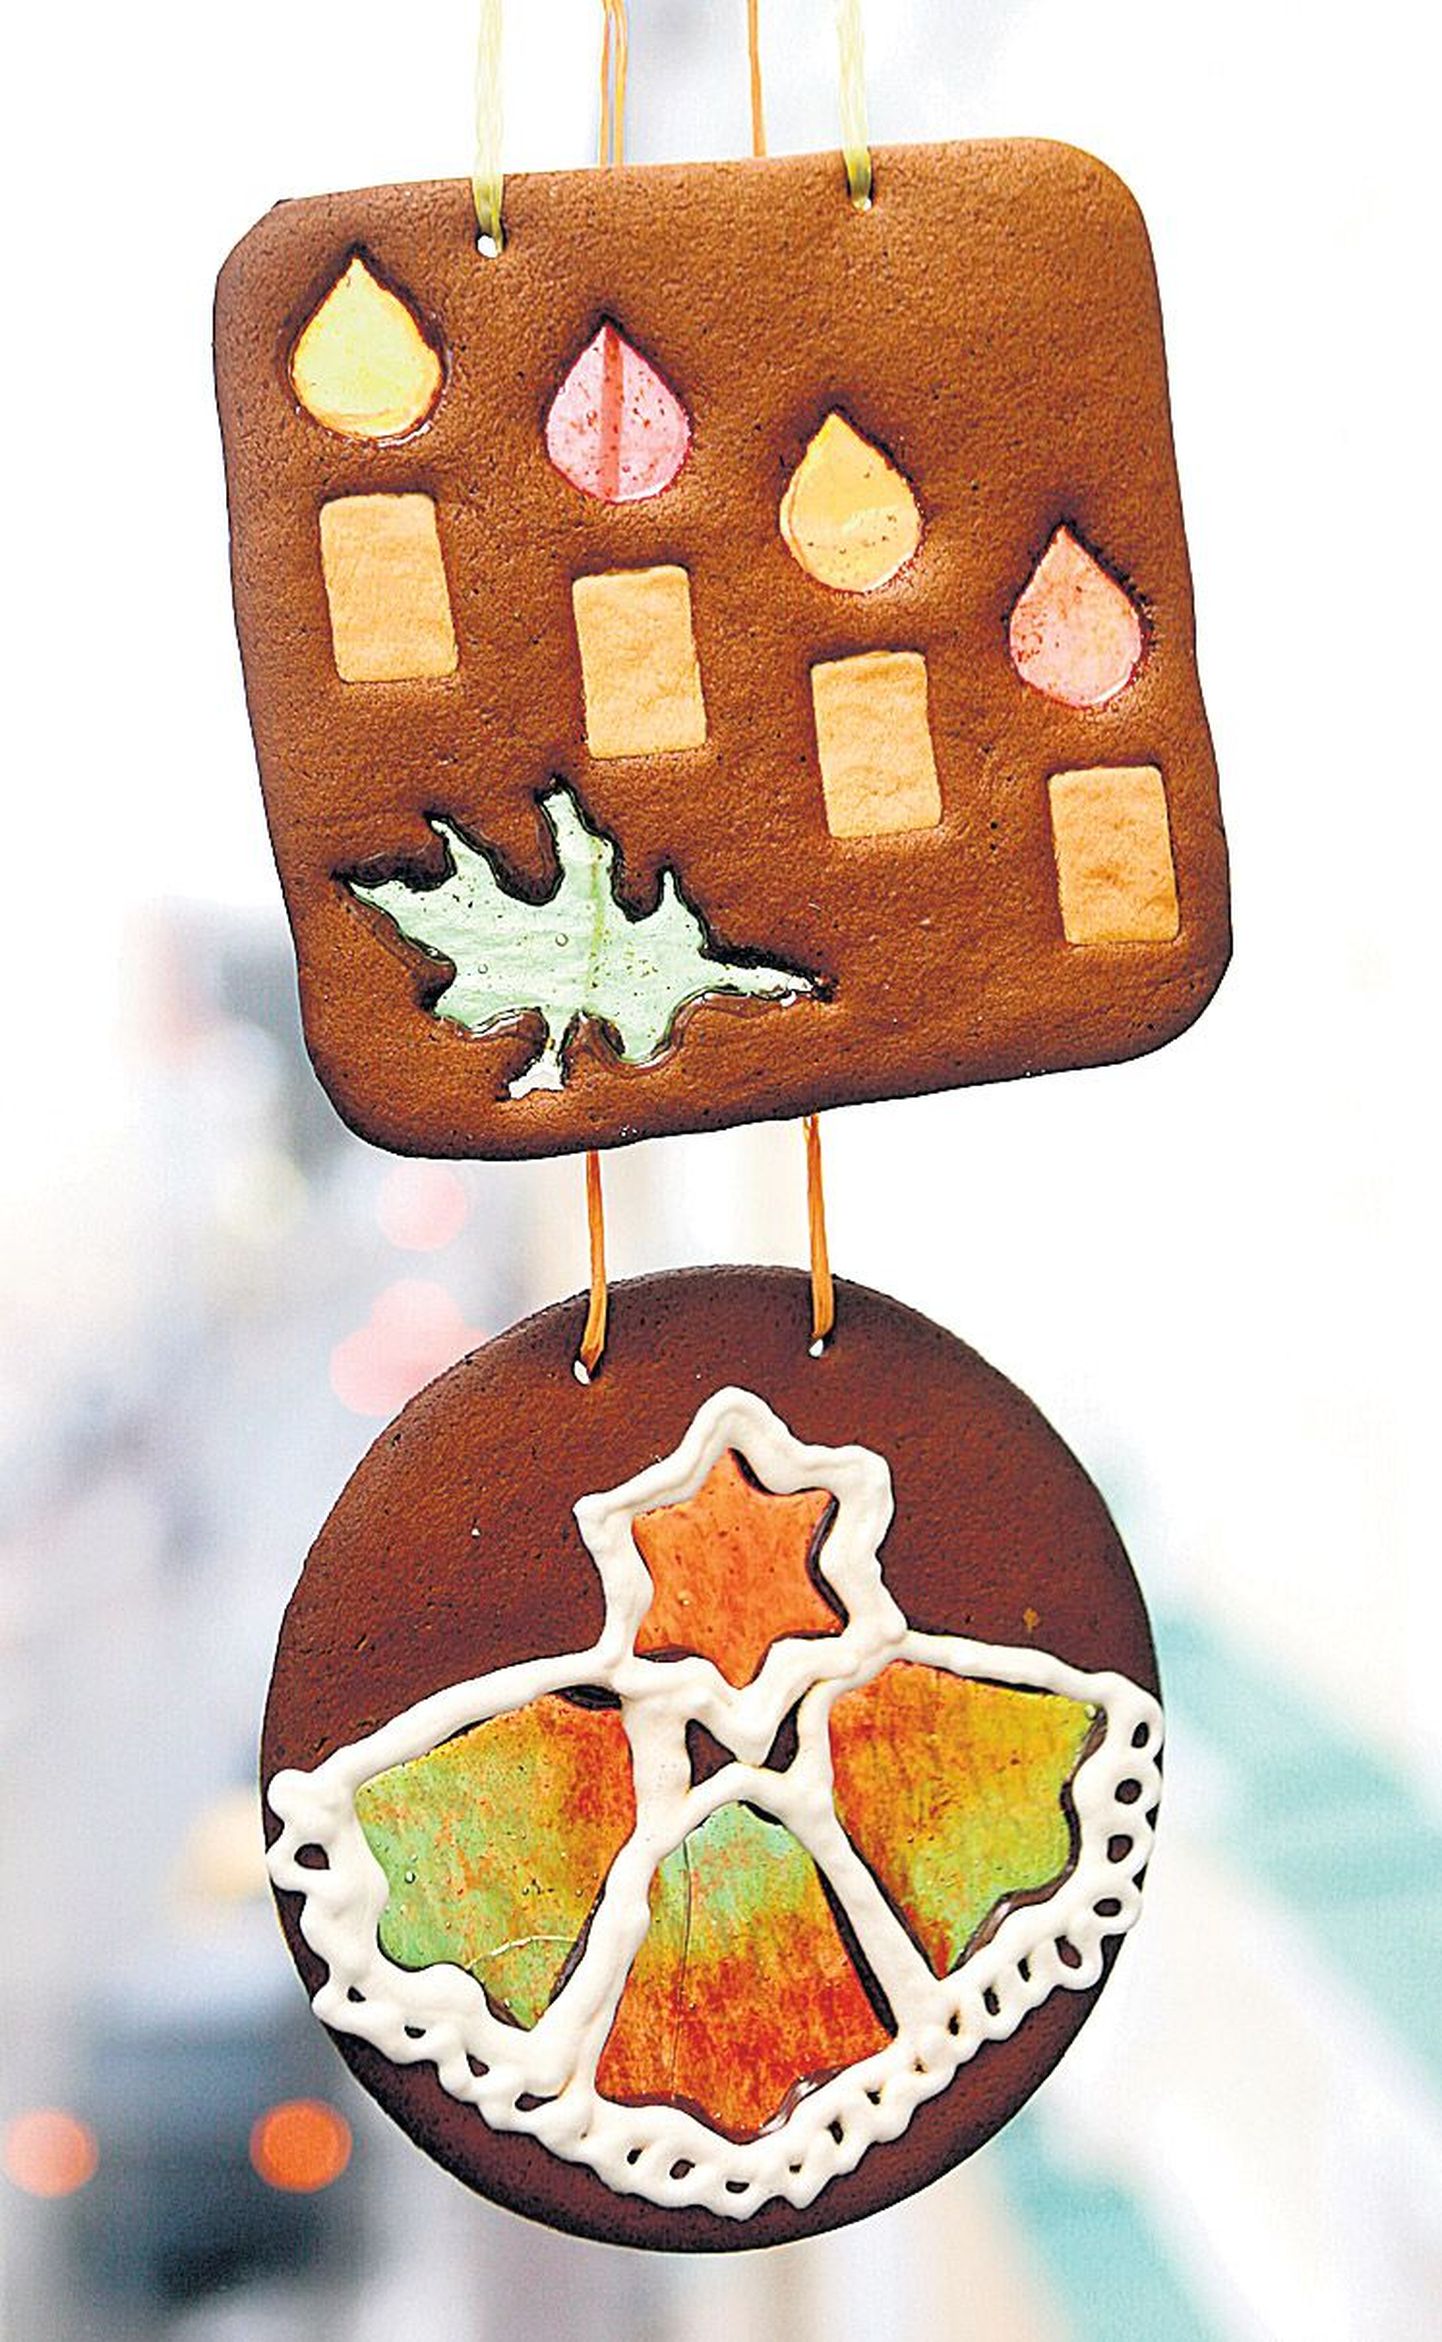 Eelmisel aastal parim piparkoogiküpsetaja oli Riina Nõukas, kes tõi meile ka piparkoogist tehtud vitraae.